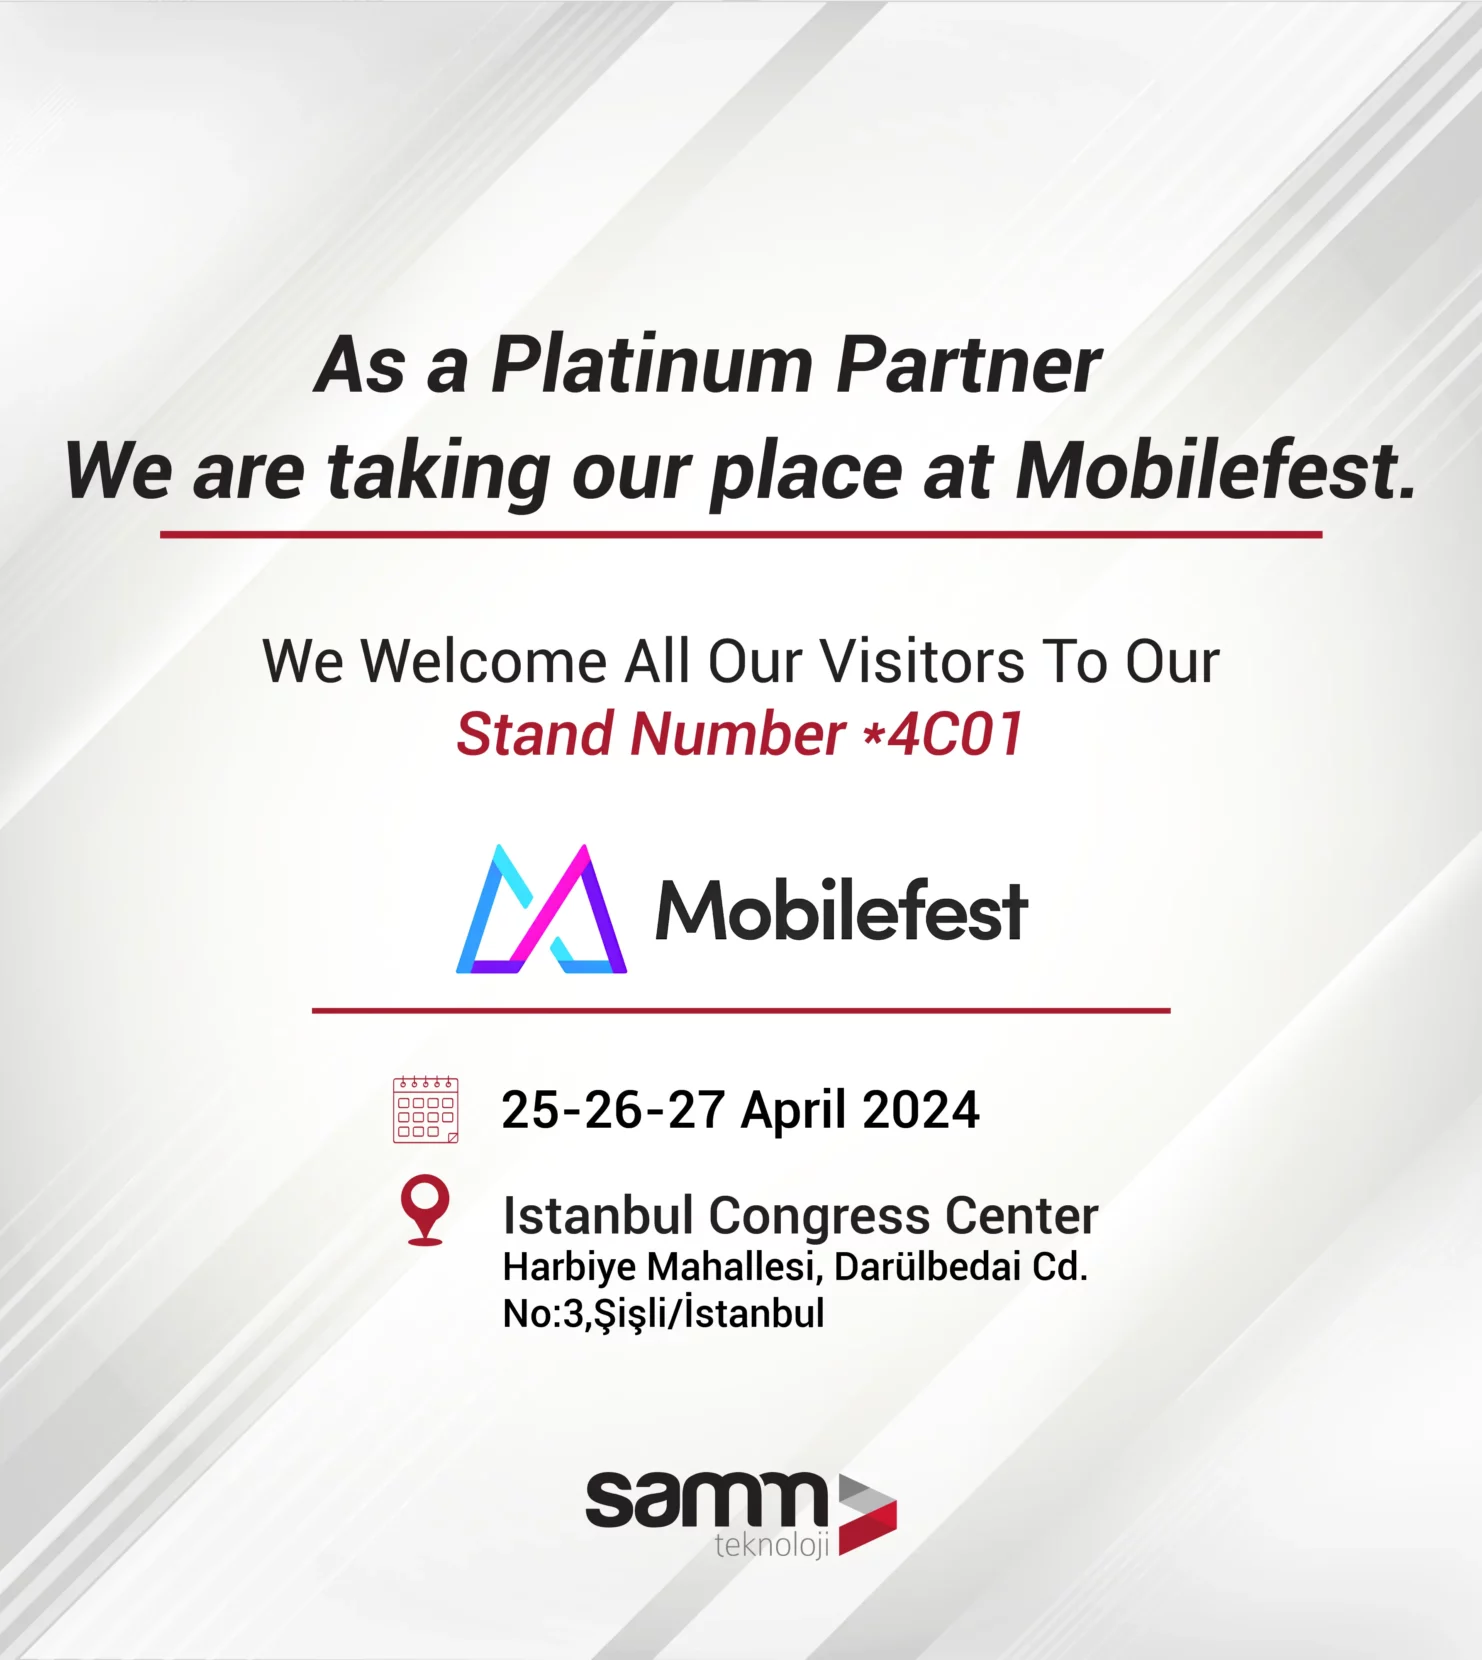 SAMM Teknoloji-Mobilefest-Viavi-Eu